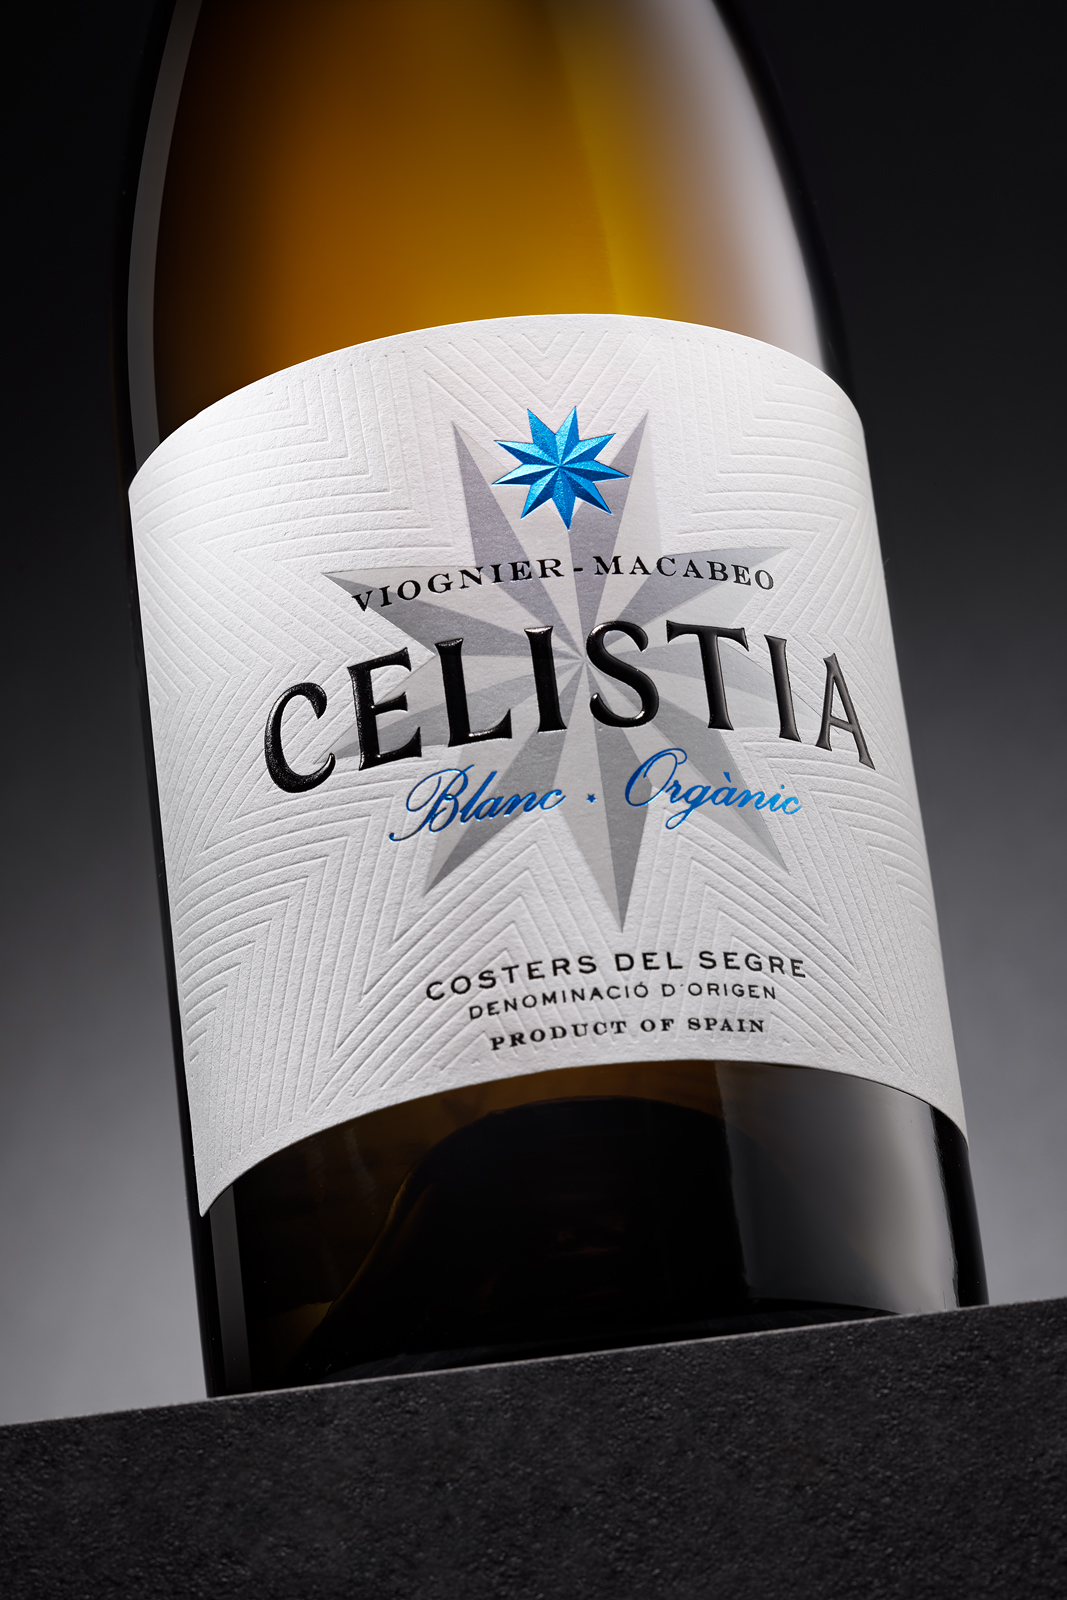 White wine Celistia label | Costers del Sió Winery | D.O. Costers del Segre